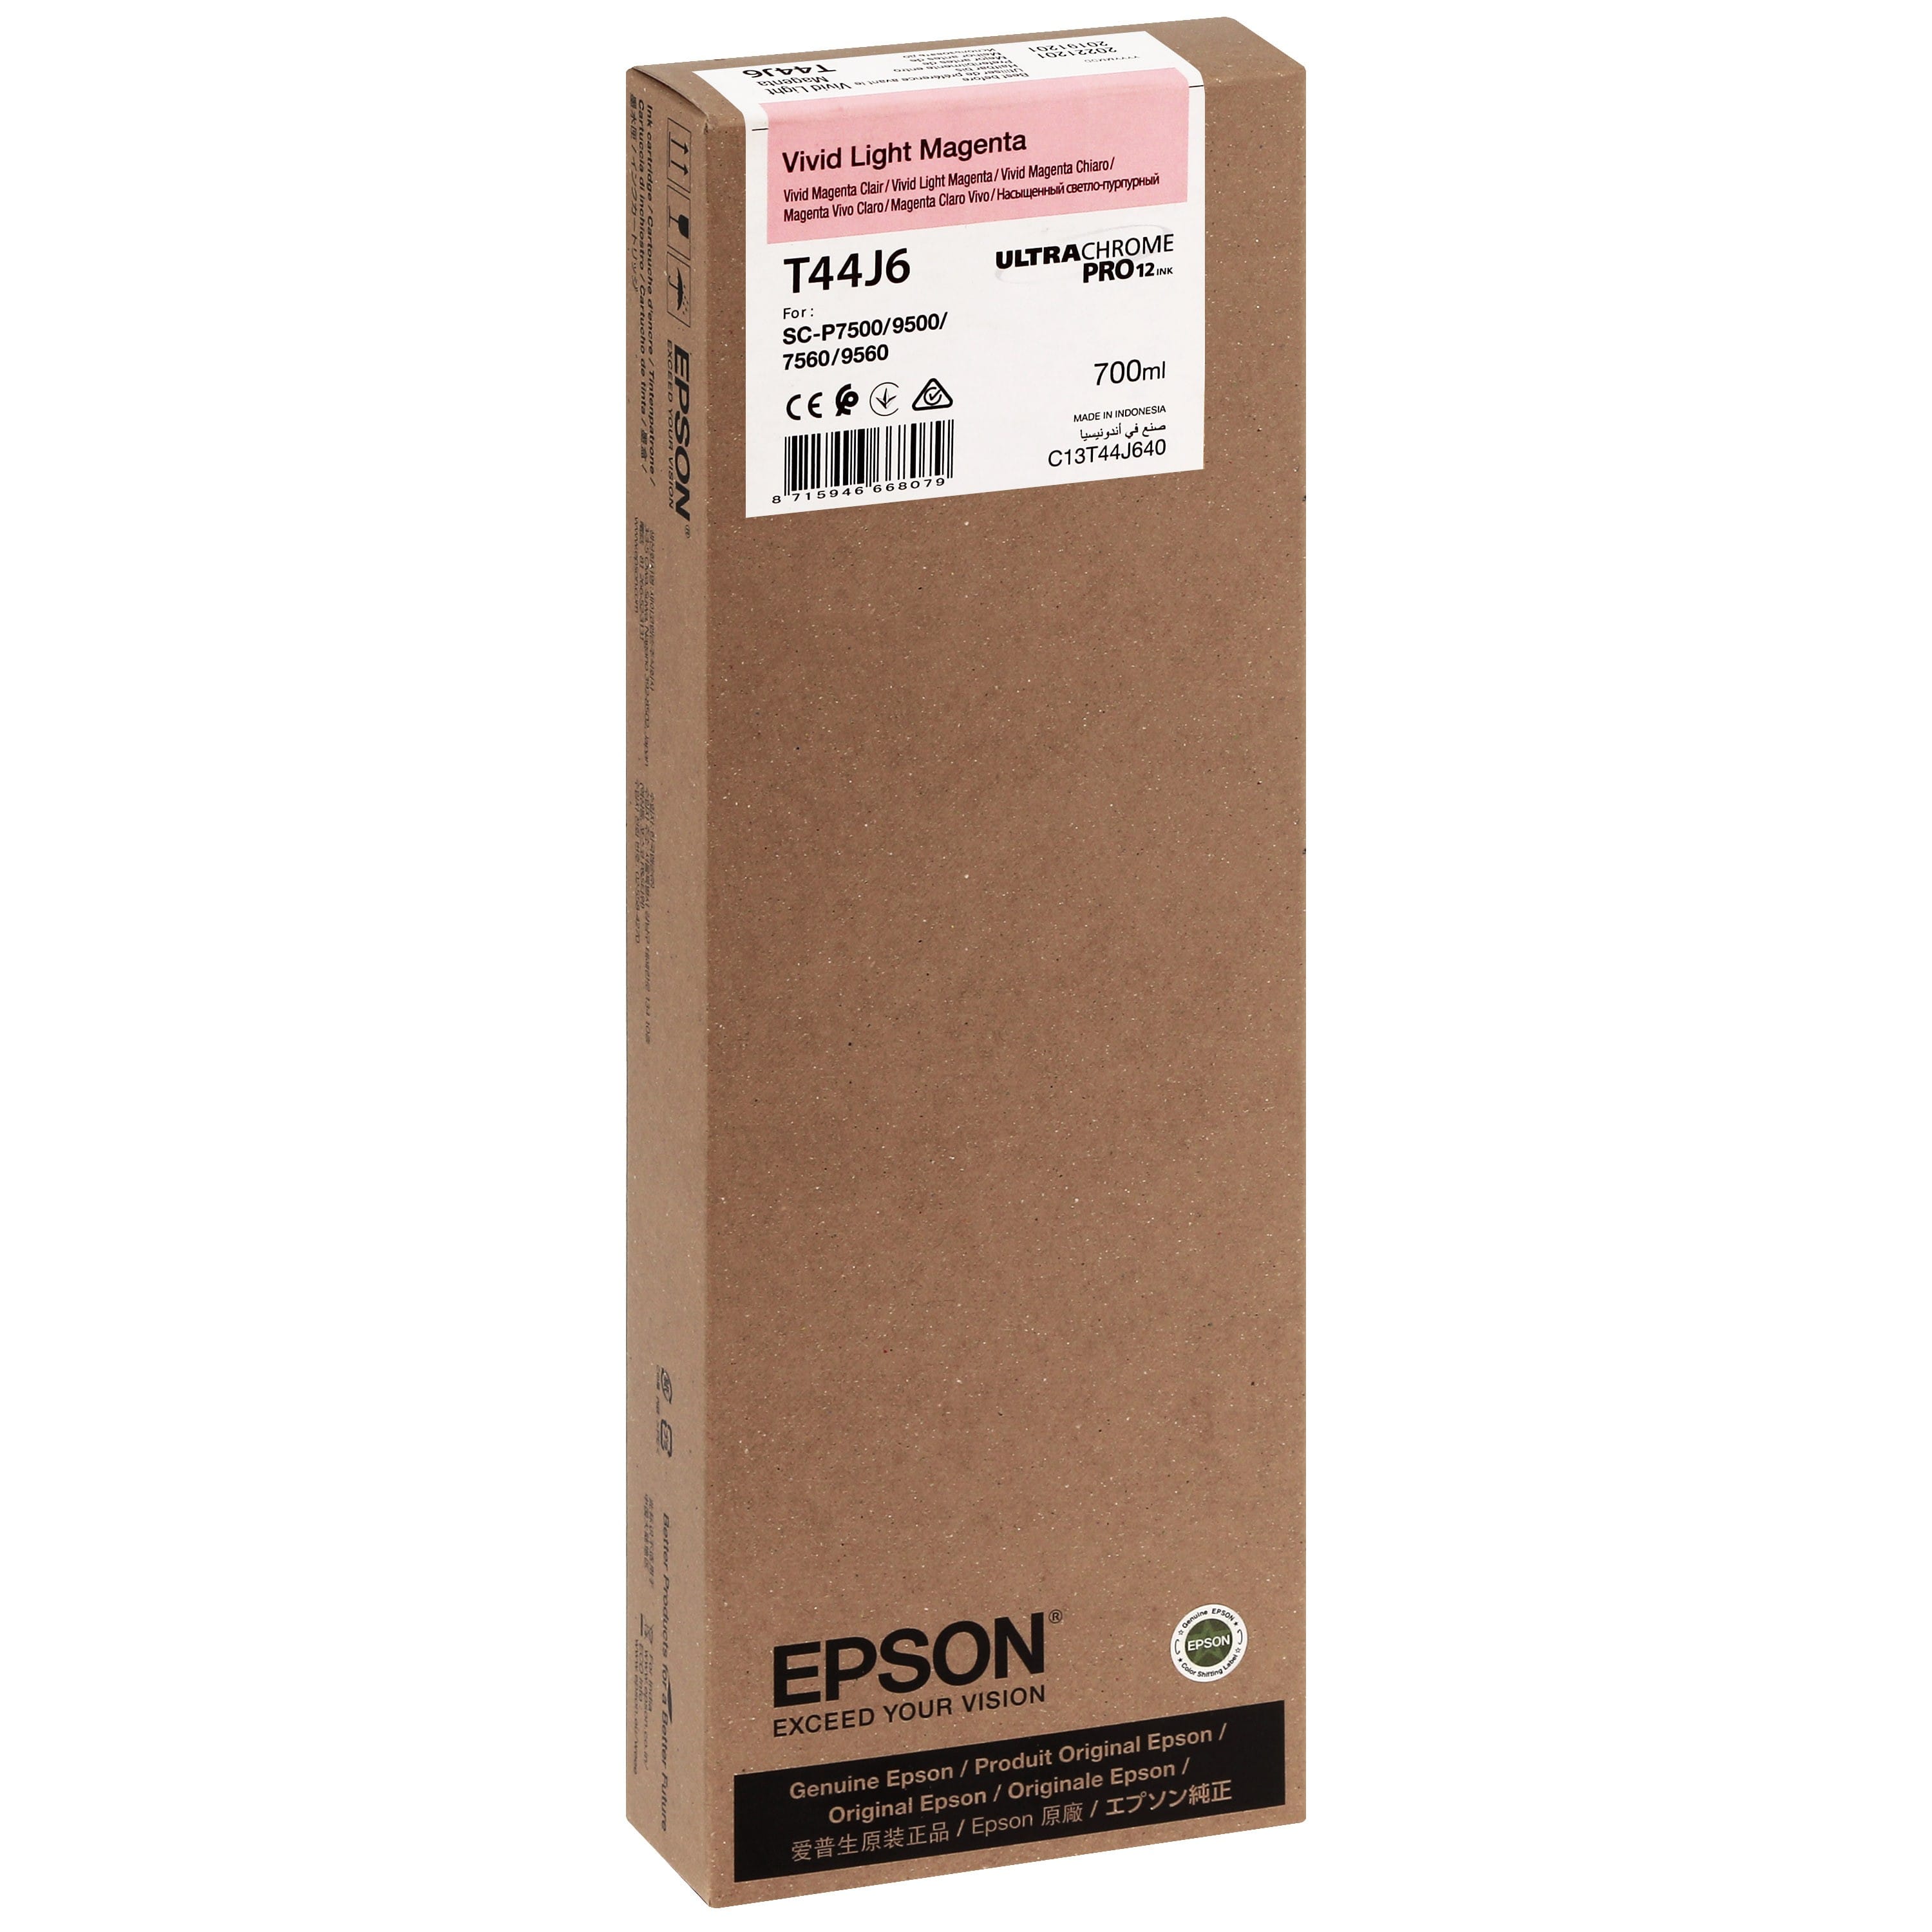 EPSON - Cartouche d'encre traceur T44J6 Pour imprimante SC-P7500/9500 UltraChrome PRO Vivid Light Magenta - 700ml